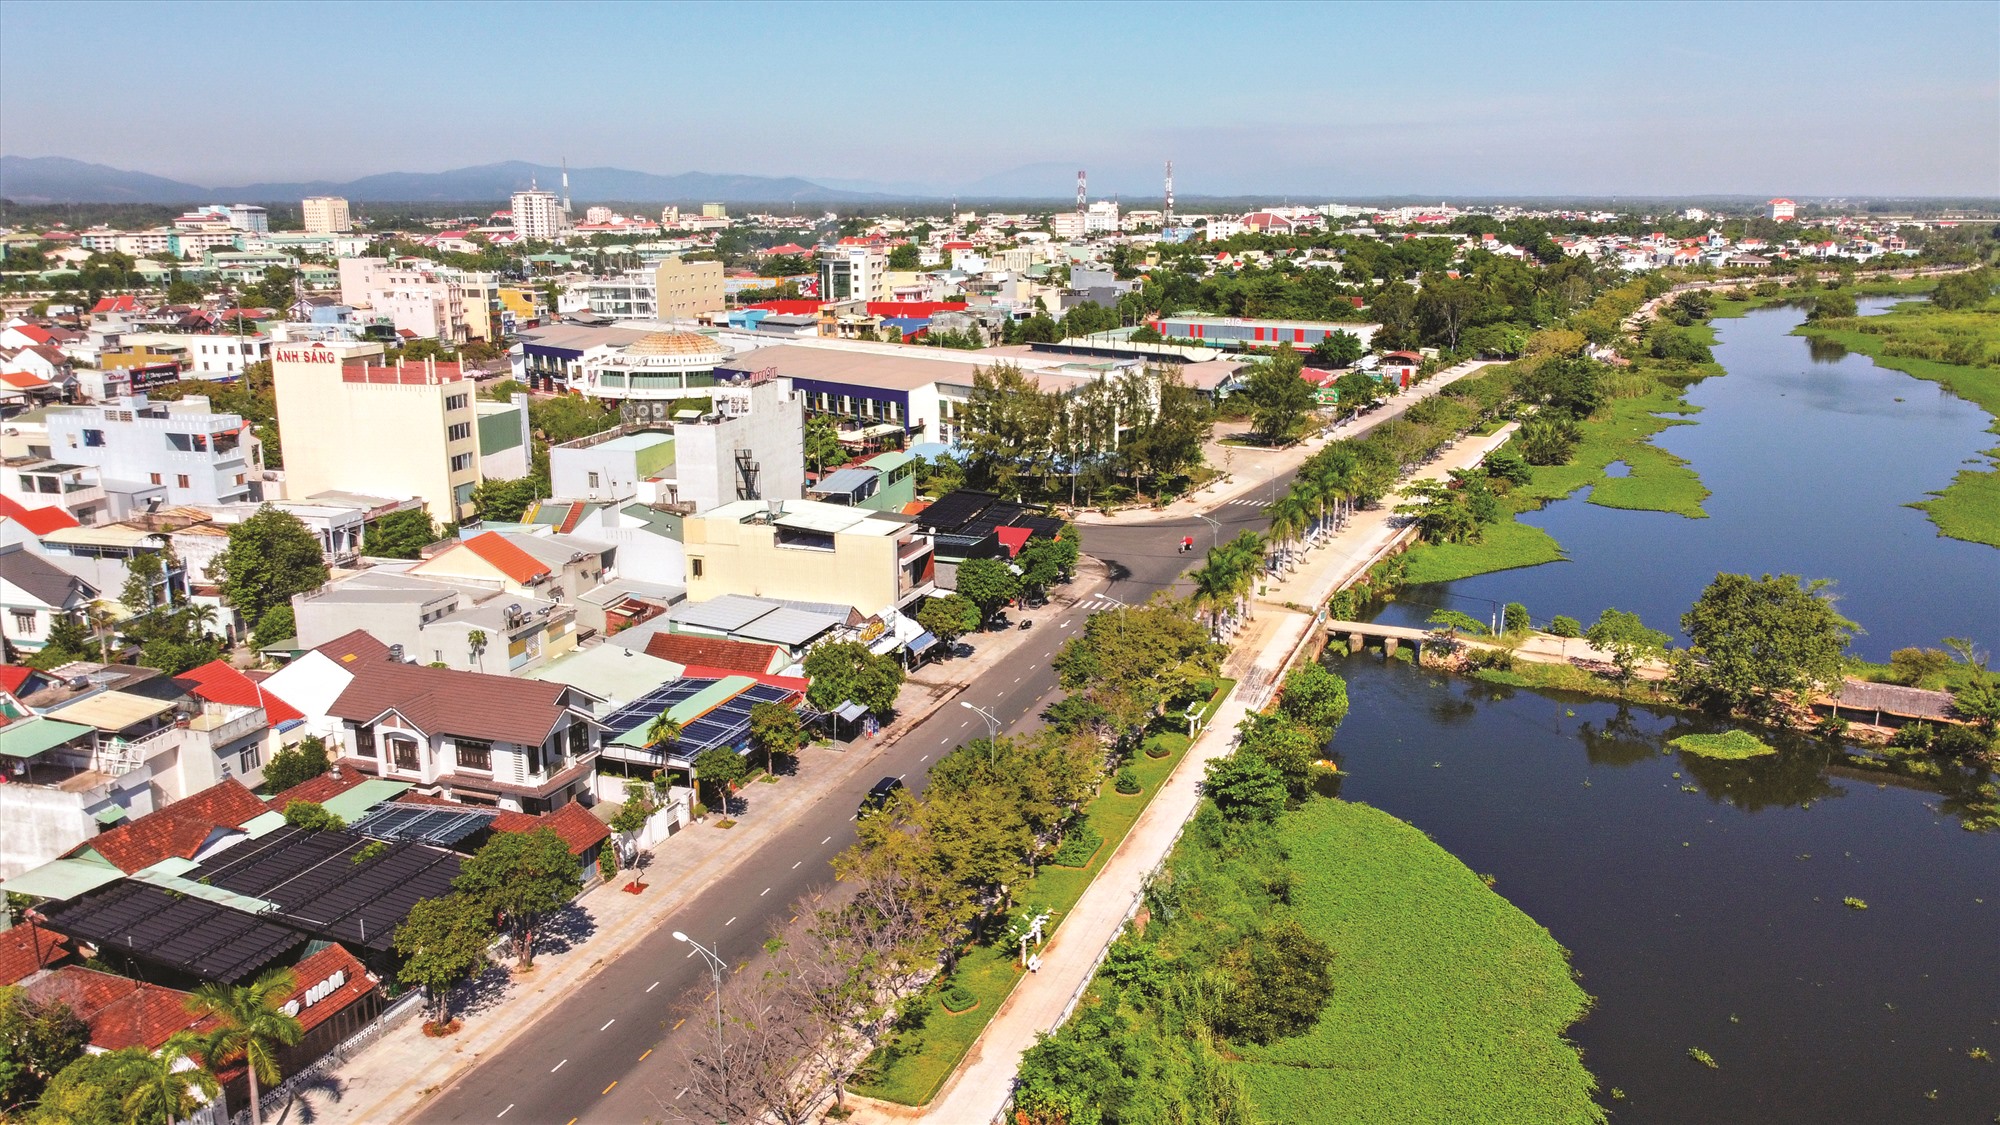 Tập đoàn Ecopark Group đề xuất làm dự án Eco Duy Xuyên tại Quảng Nam, tái hiện phố cổ Hội An